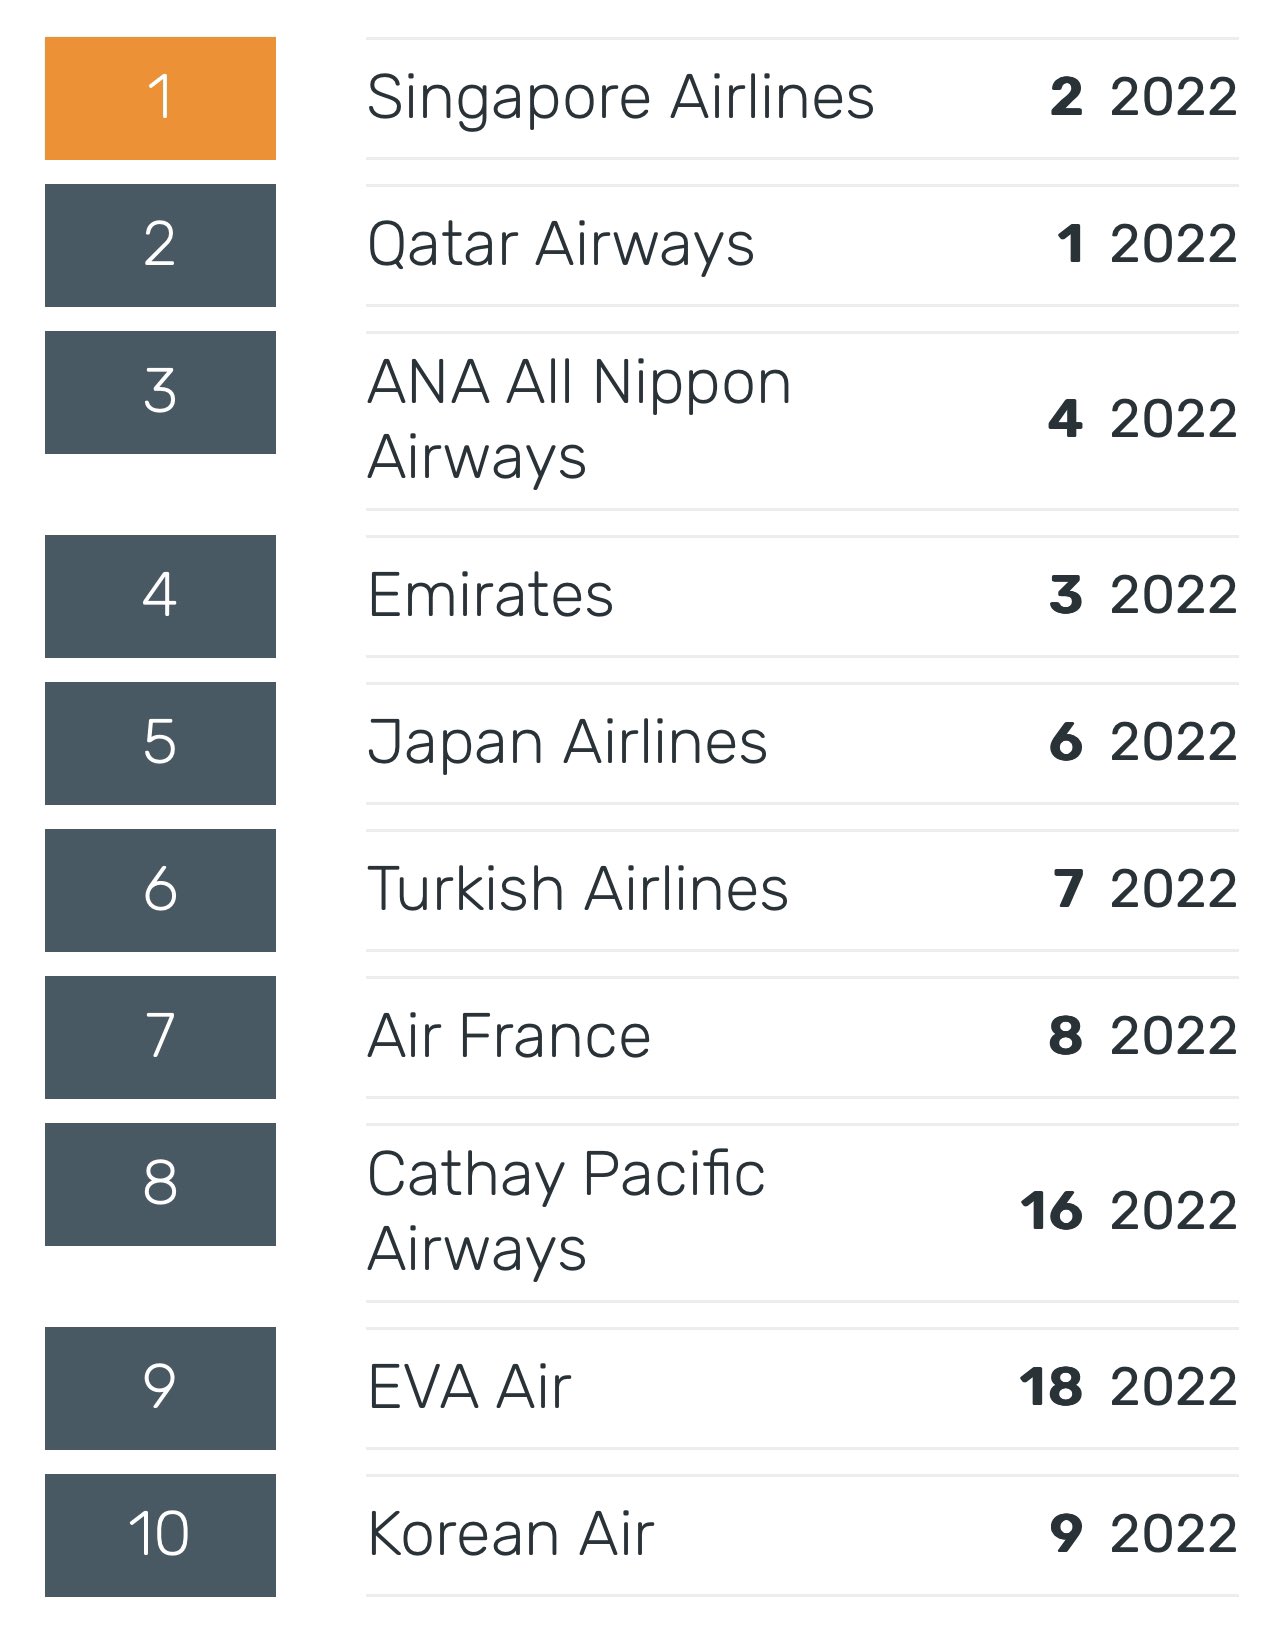 أفضل 10 شركات طيران على مستوى العالم وفقًا لسكاي تراكس